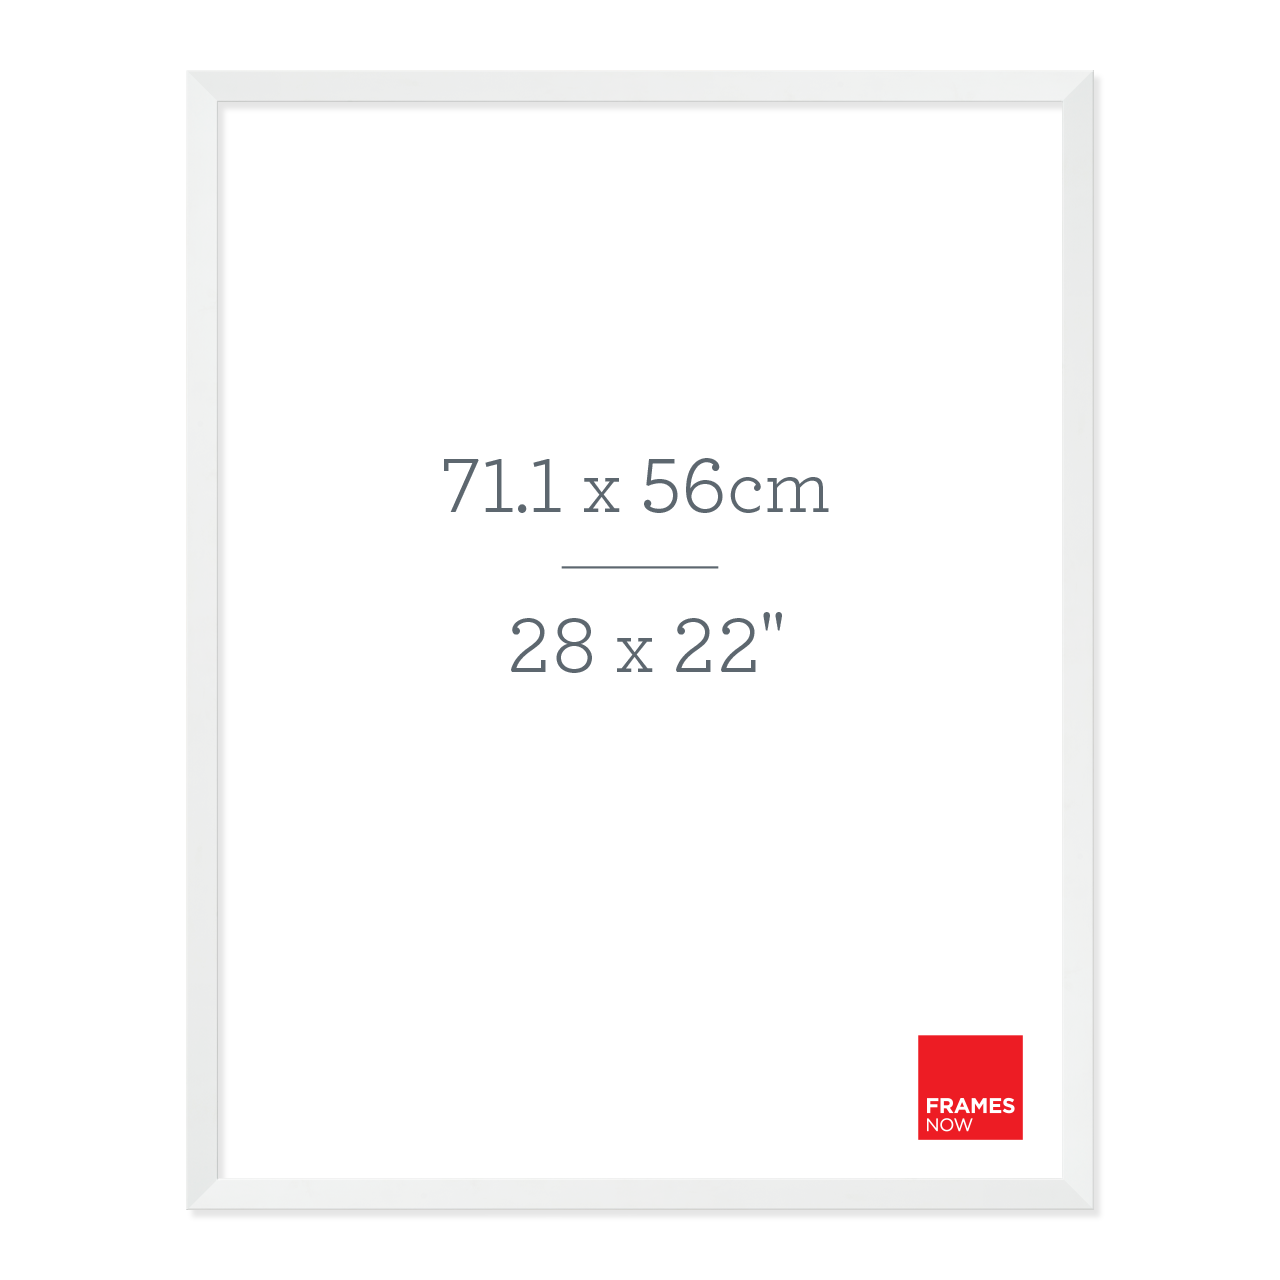 Premium Matte White Box Picture Frame for 71.1 x 56cm Artwork